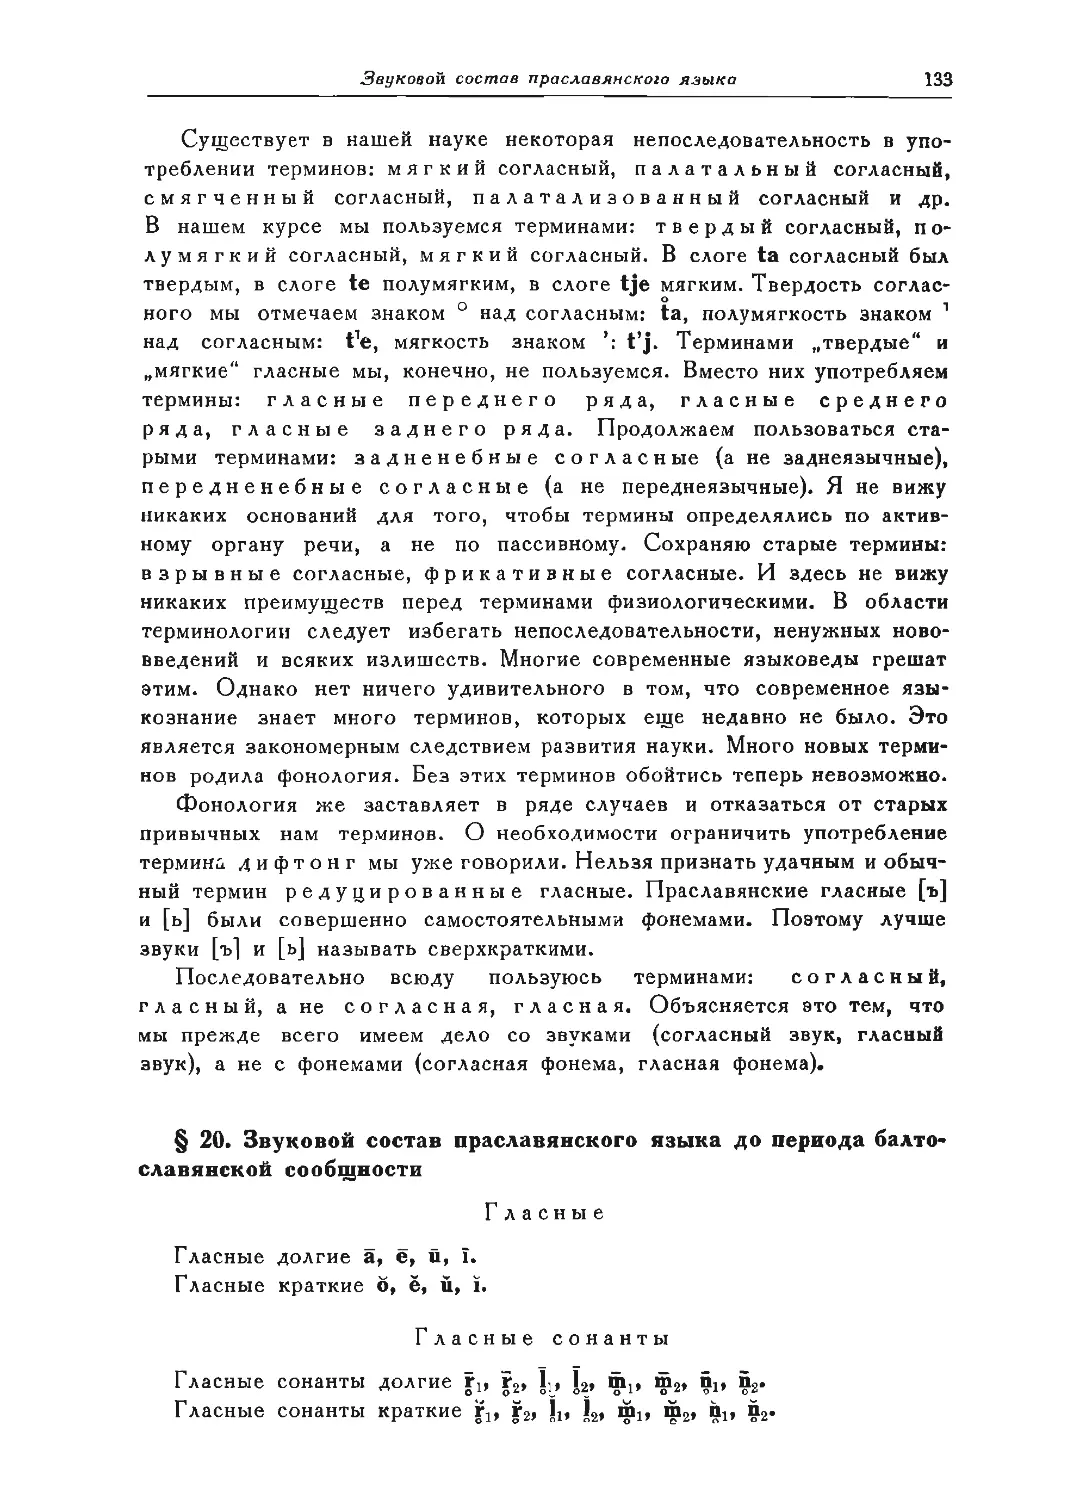 ﻿§ 20. Звуковой состав праславянского языка до периода балто-славянской сообщности